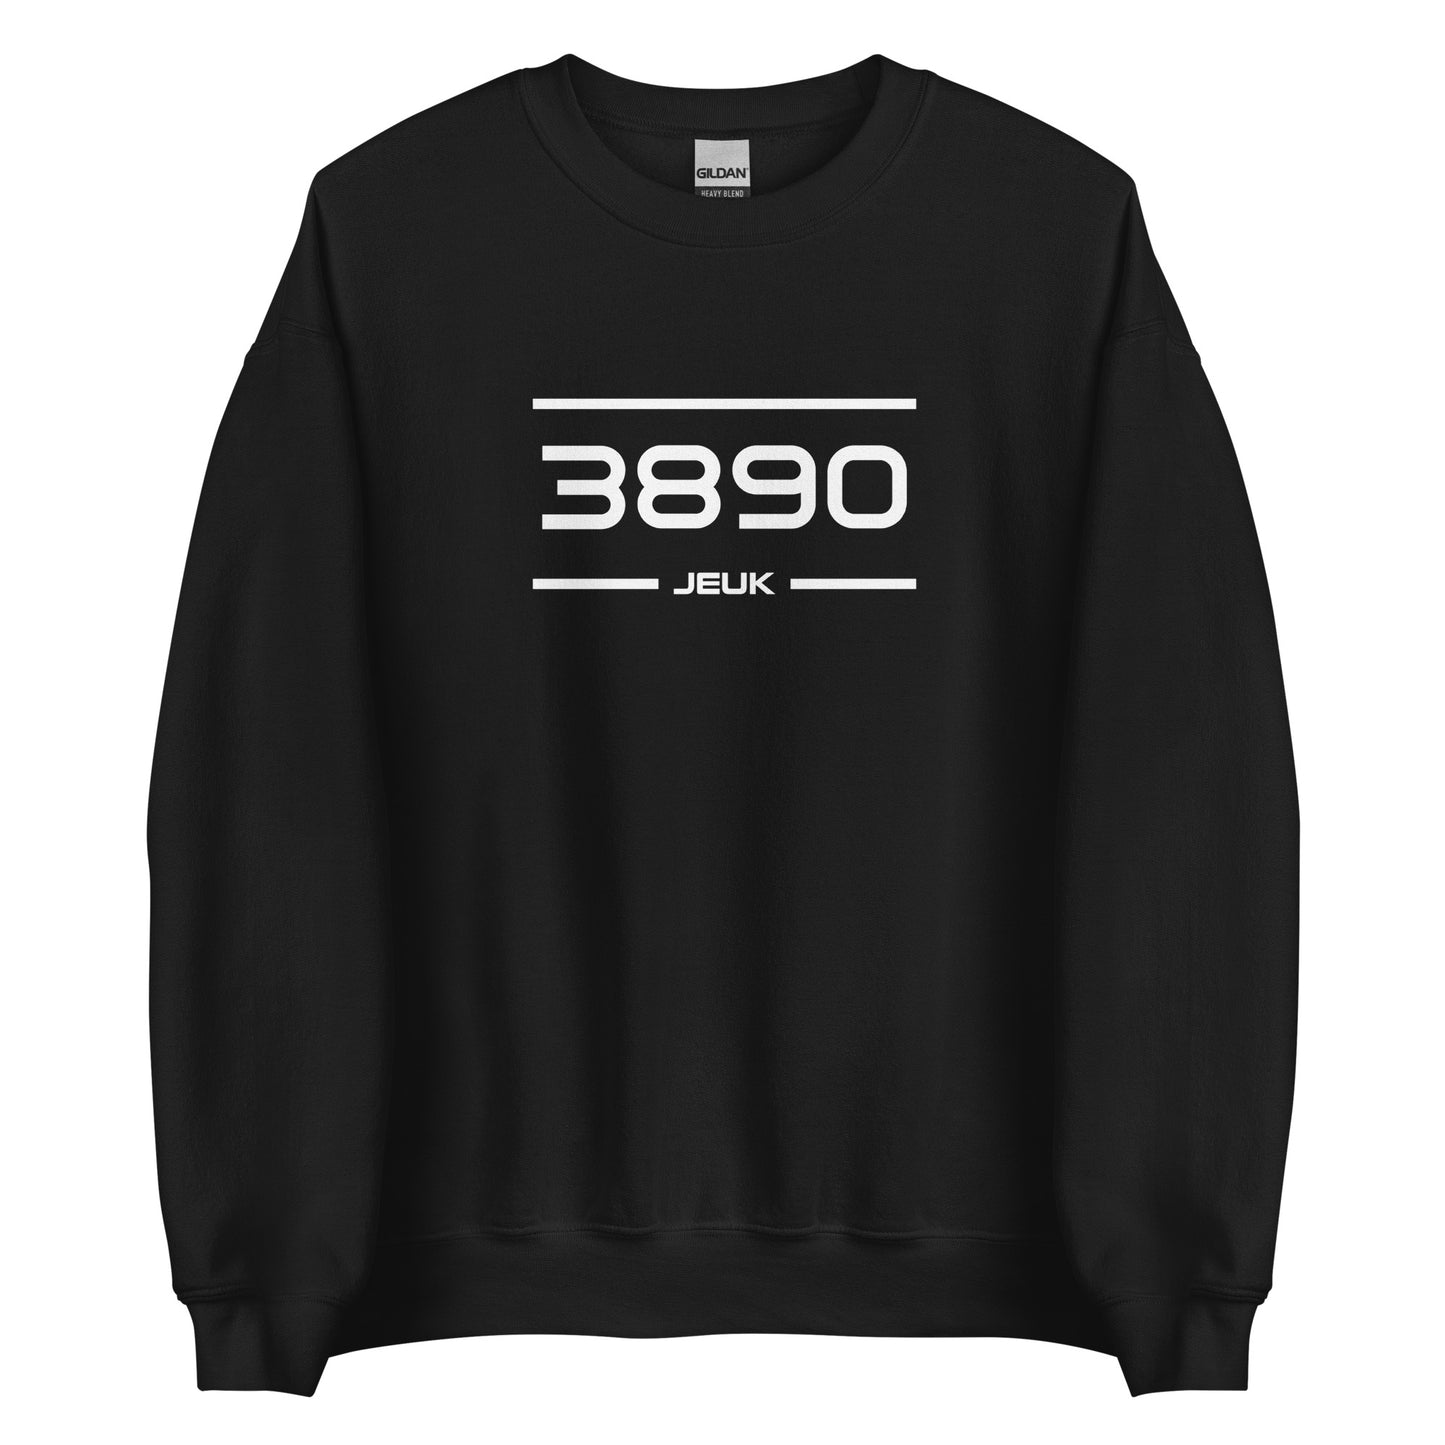 Sweater - 3890 - Jeuk (M/V)